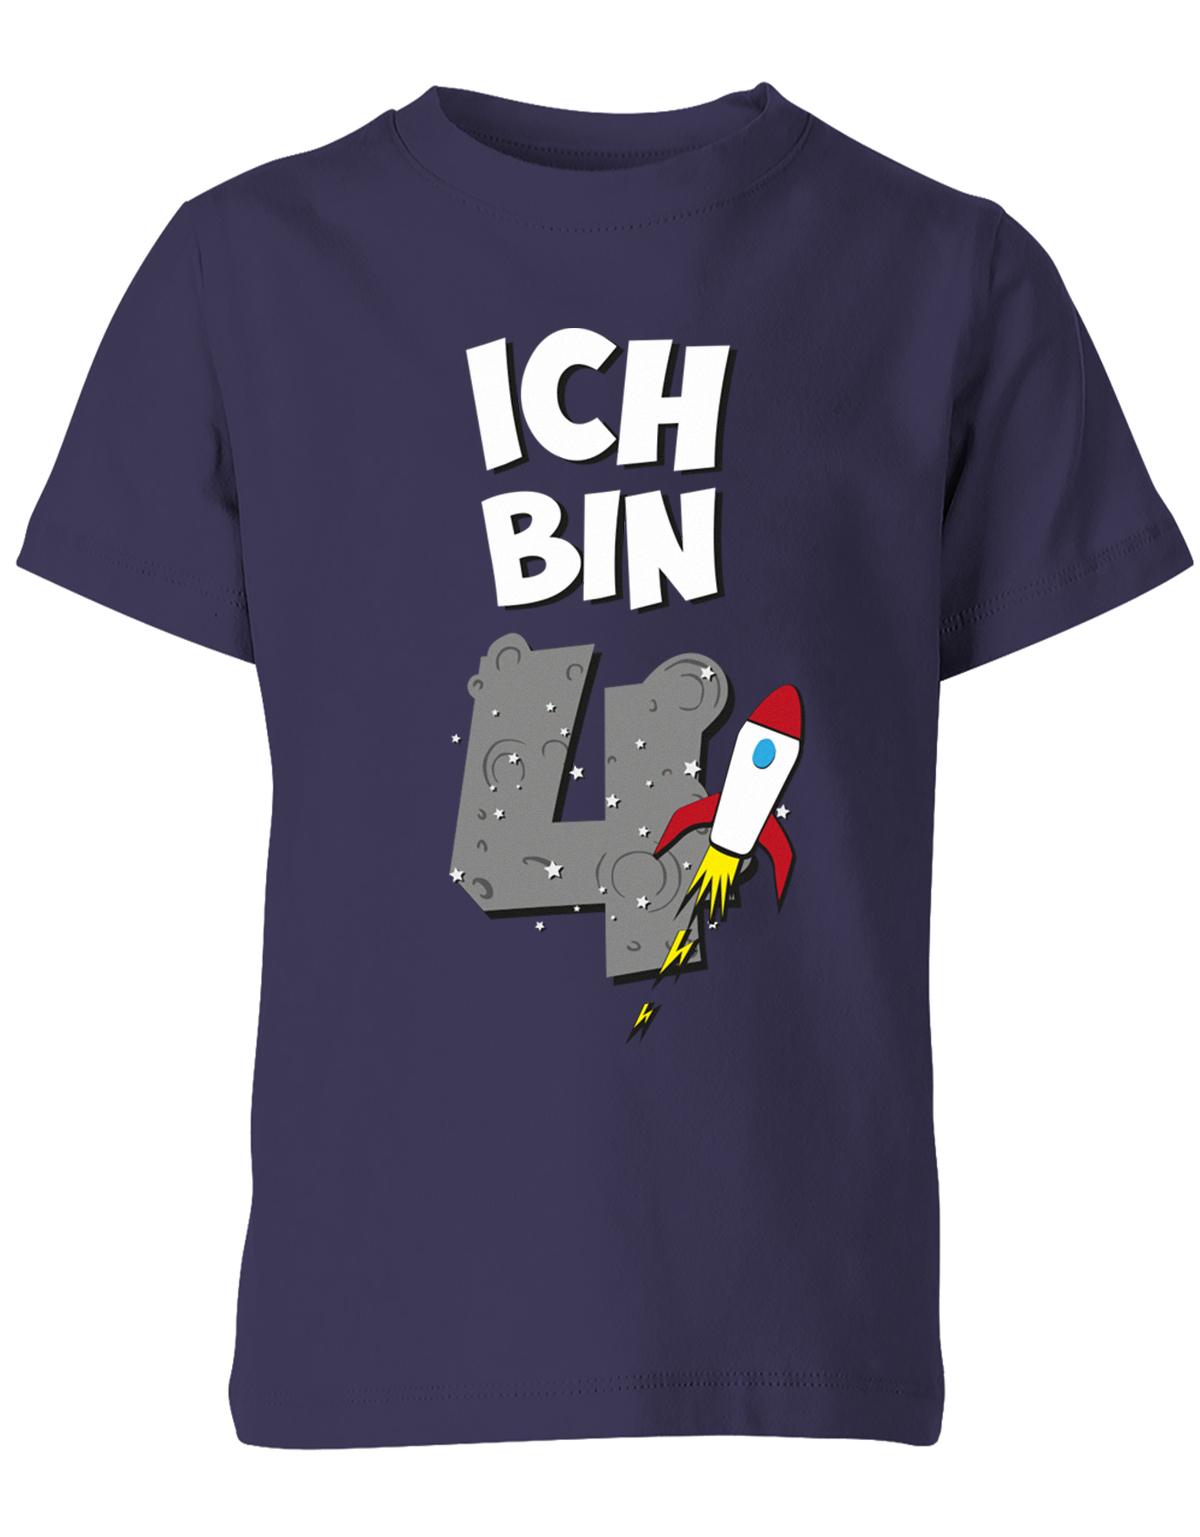 ich-bin-4-weltraum-rakete-planet-geburtstag-kinder-shirt-navy